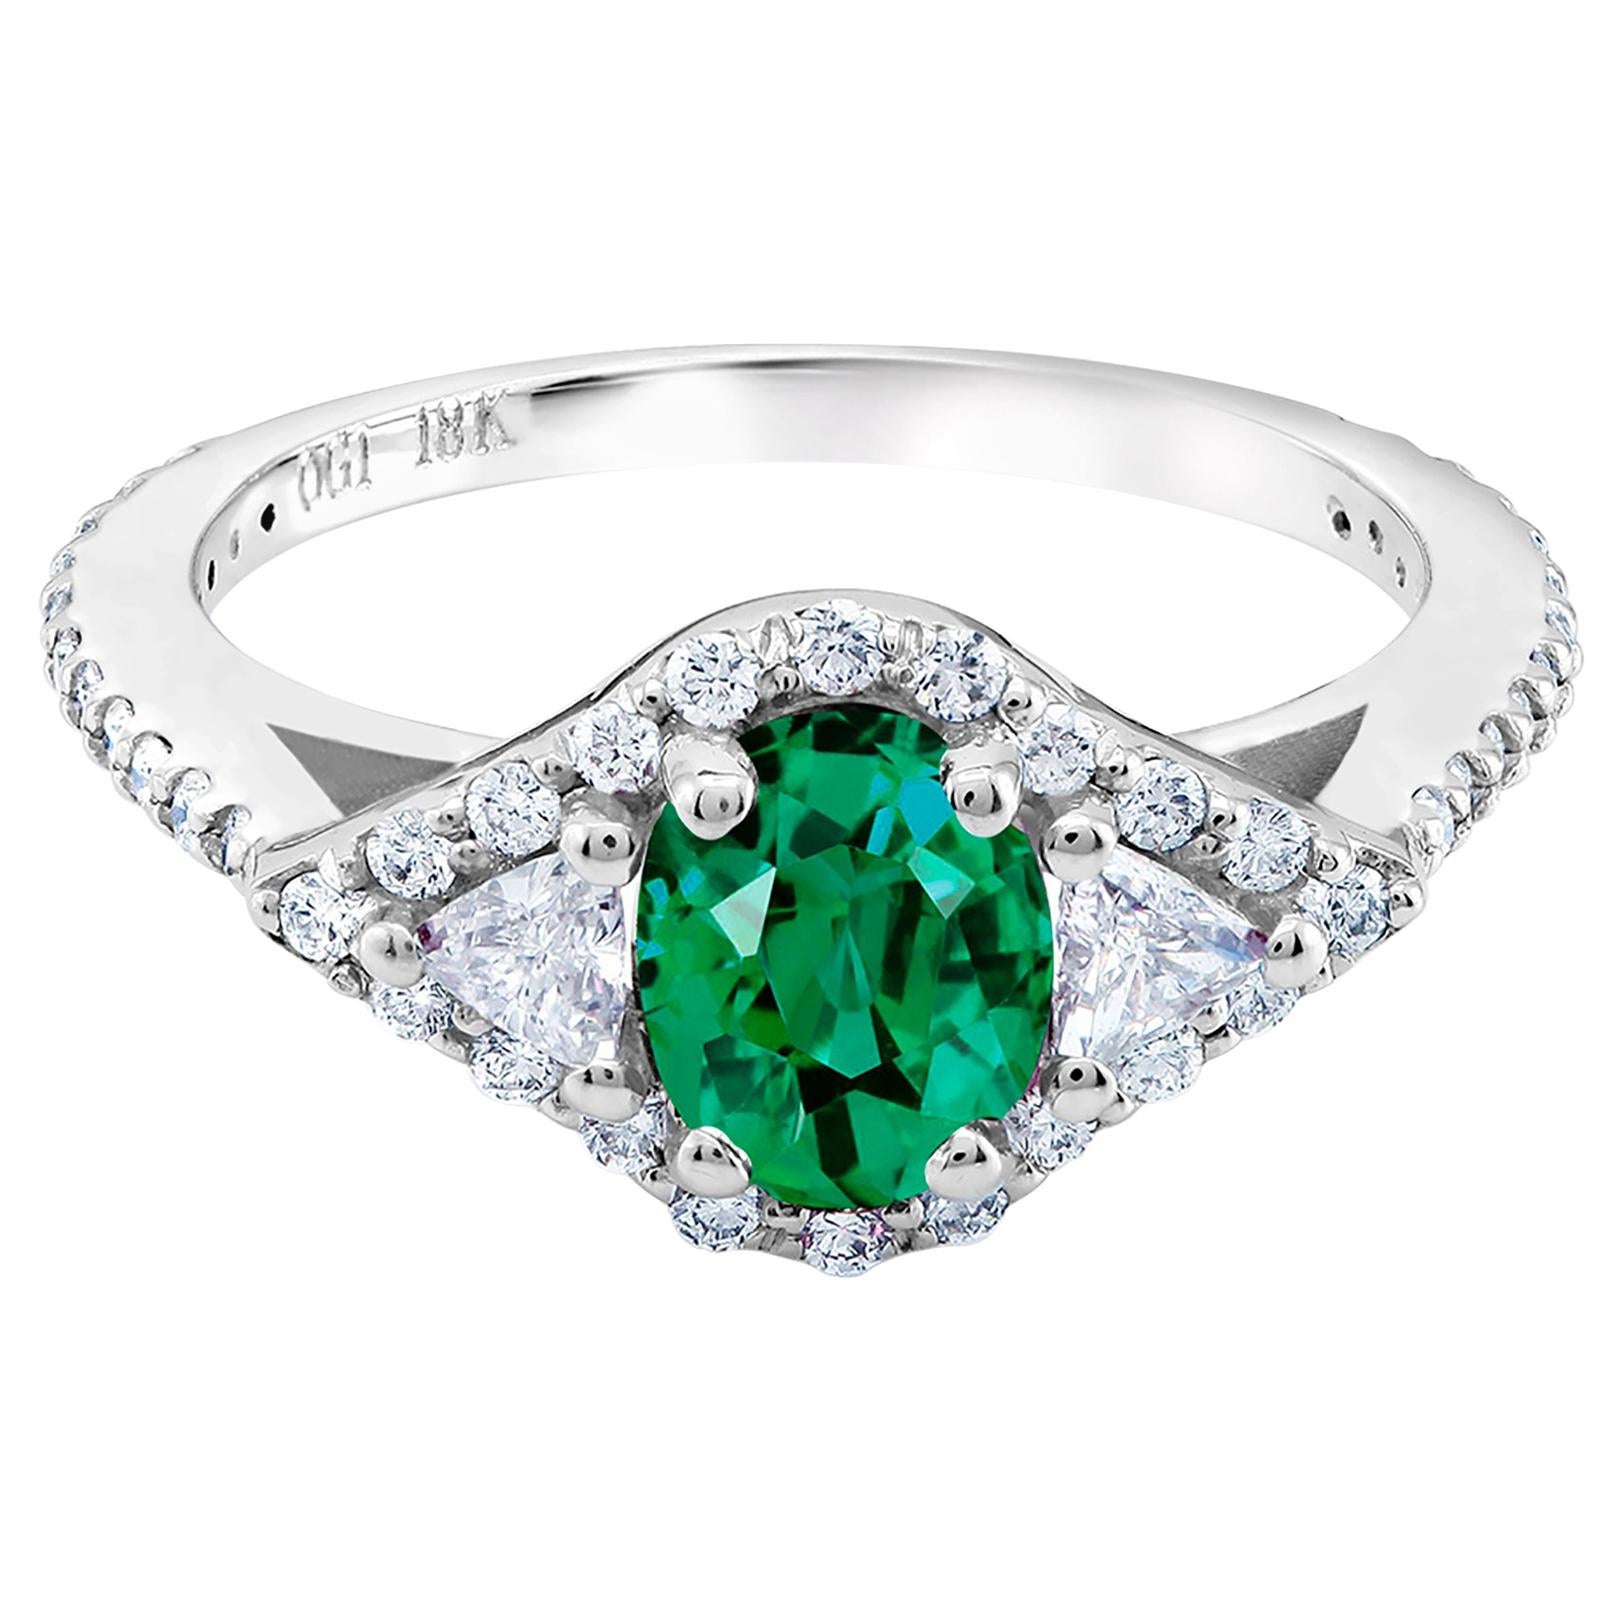 18 Karat White Gold Emerald Diamond Cocktail Ring Weighing 1.68 Carat  